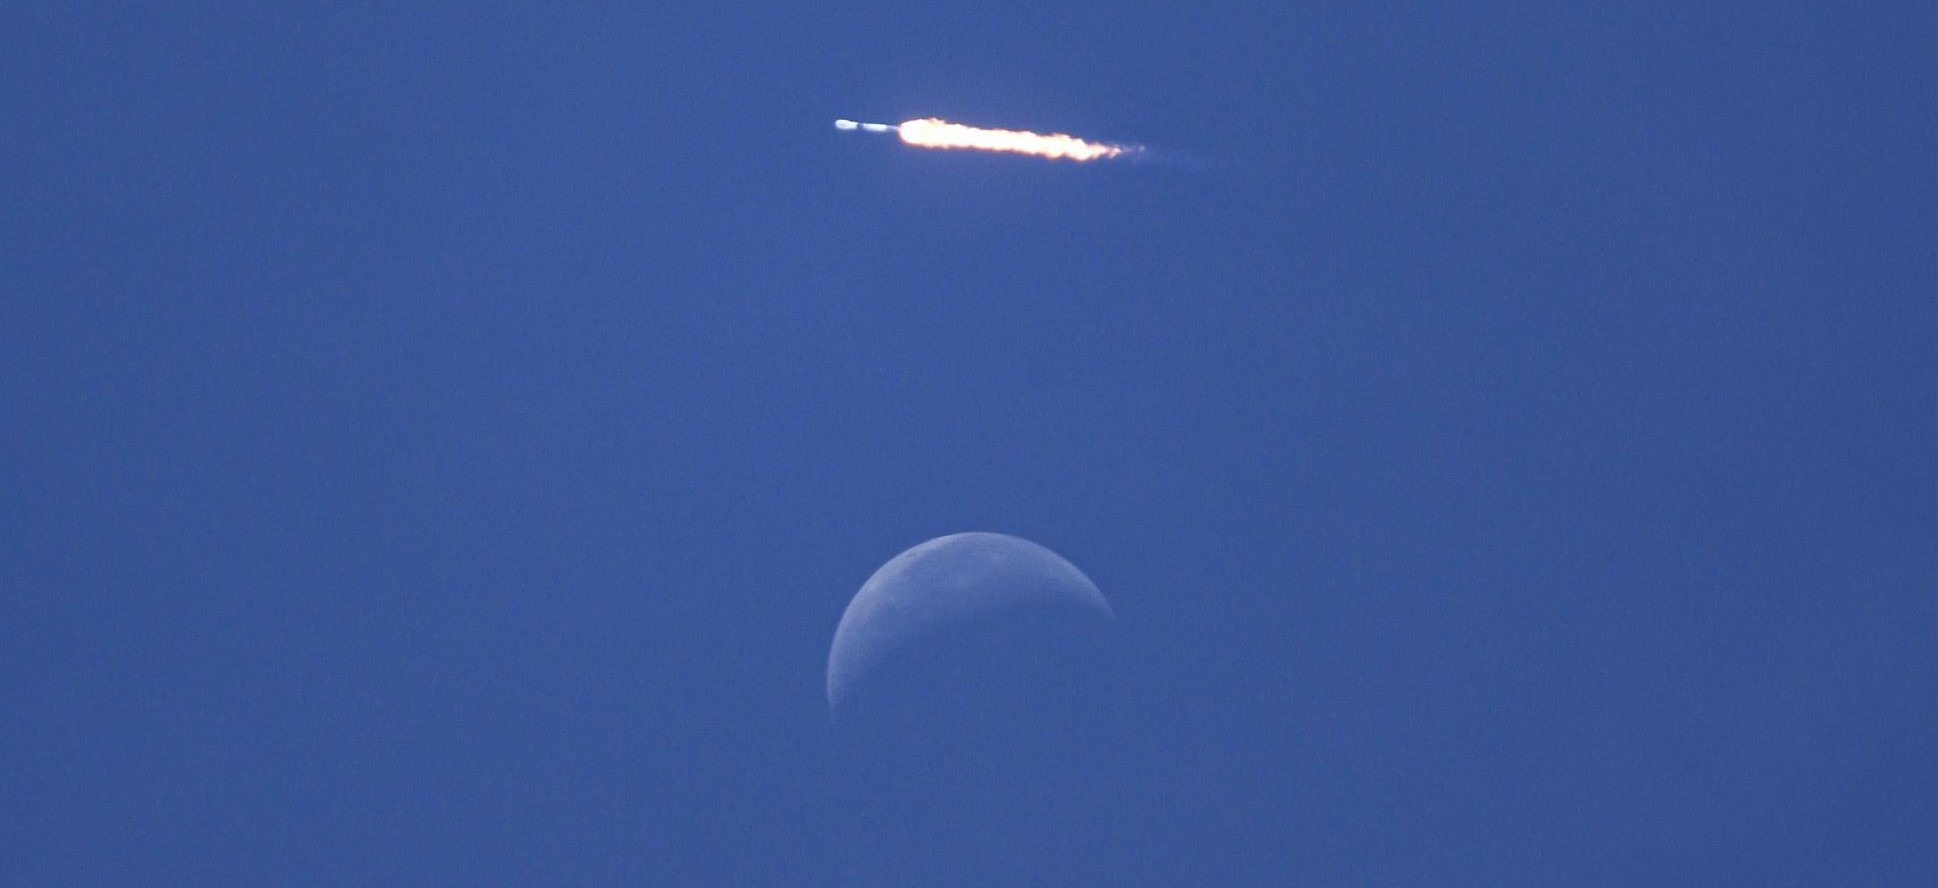 SpaceX ma wystrzelić księżyc po raz pierwszy [webcast]